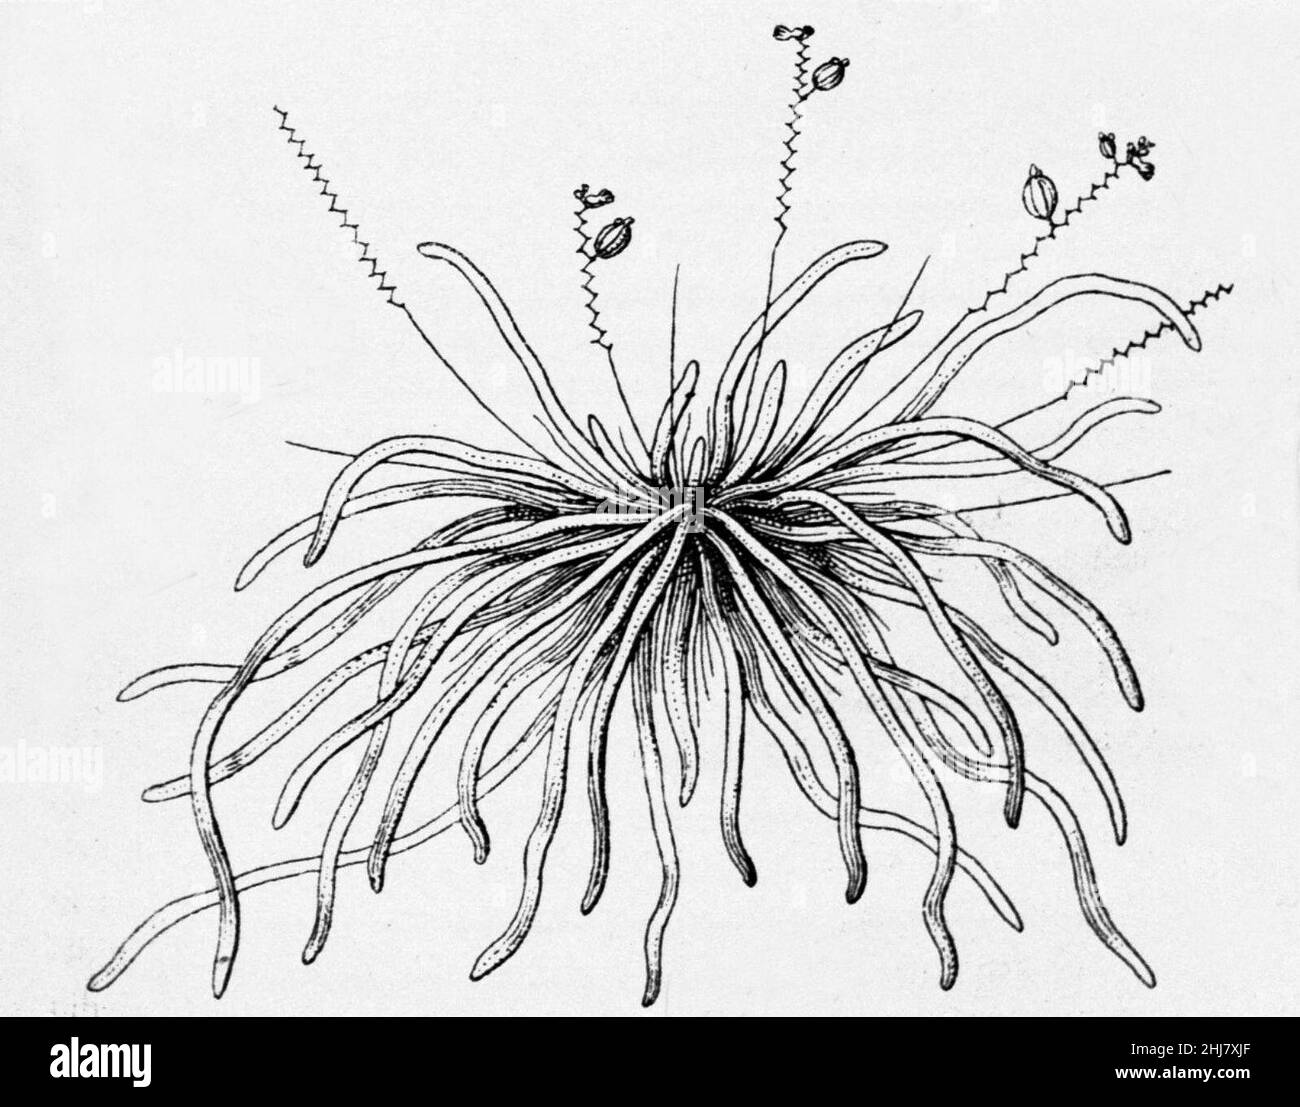 Taeniophyllum palawense drawing - cropped. Stock Photo